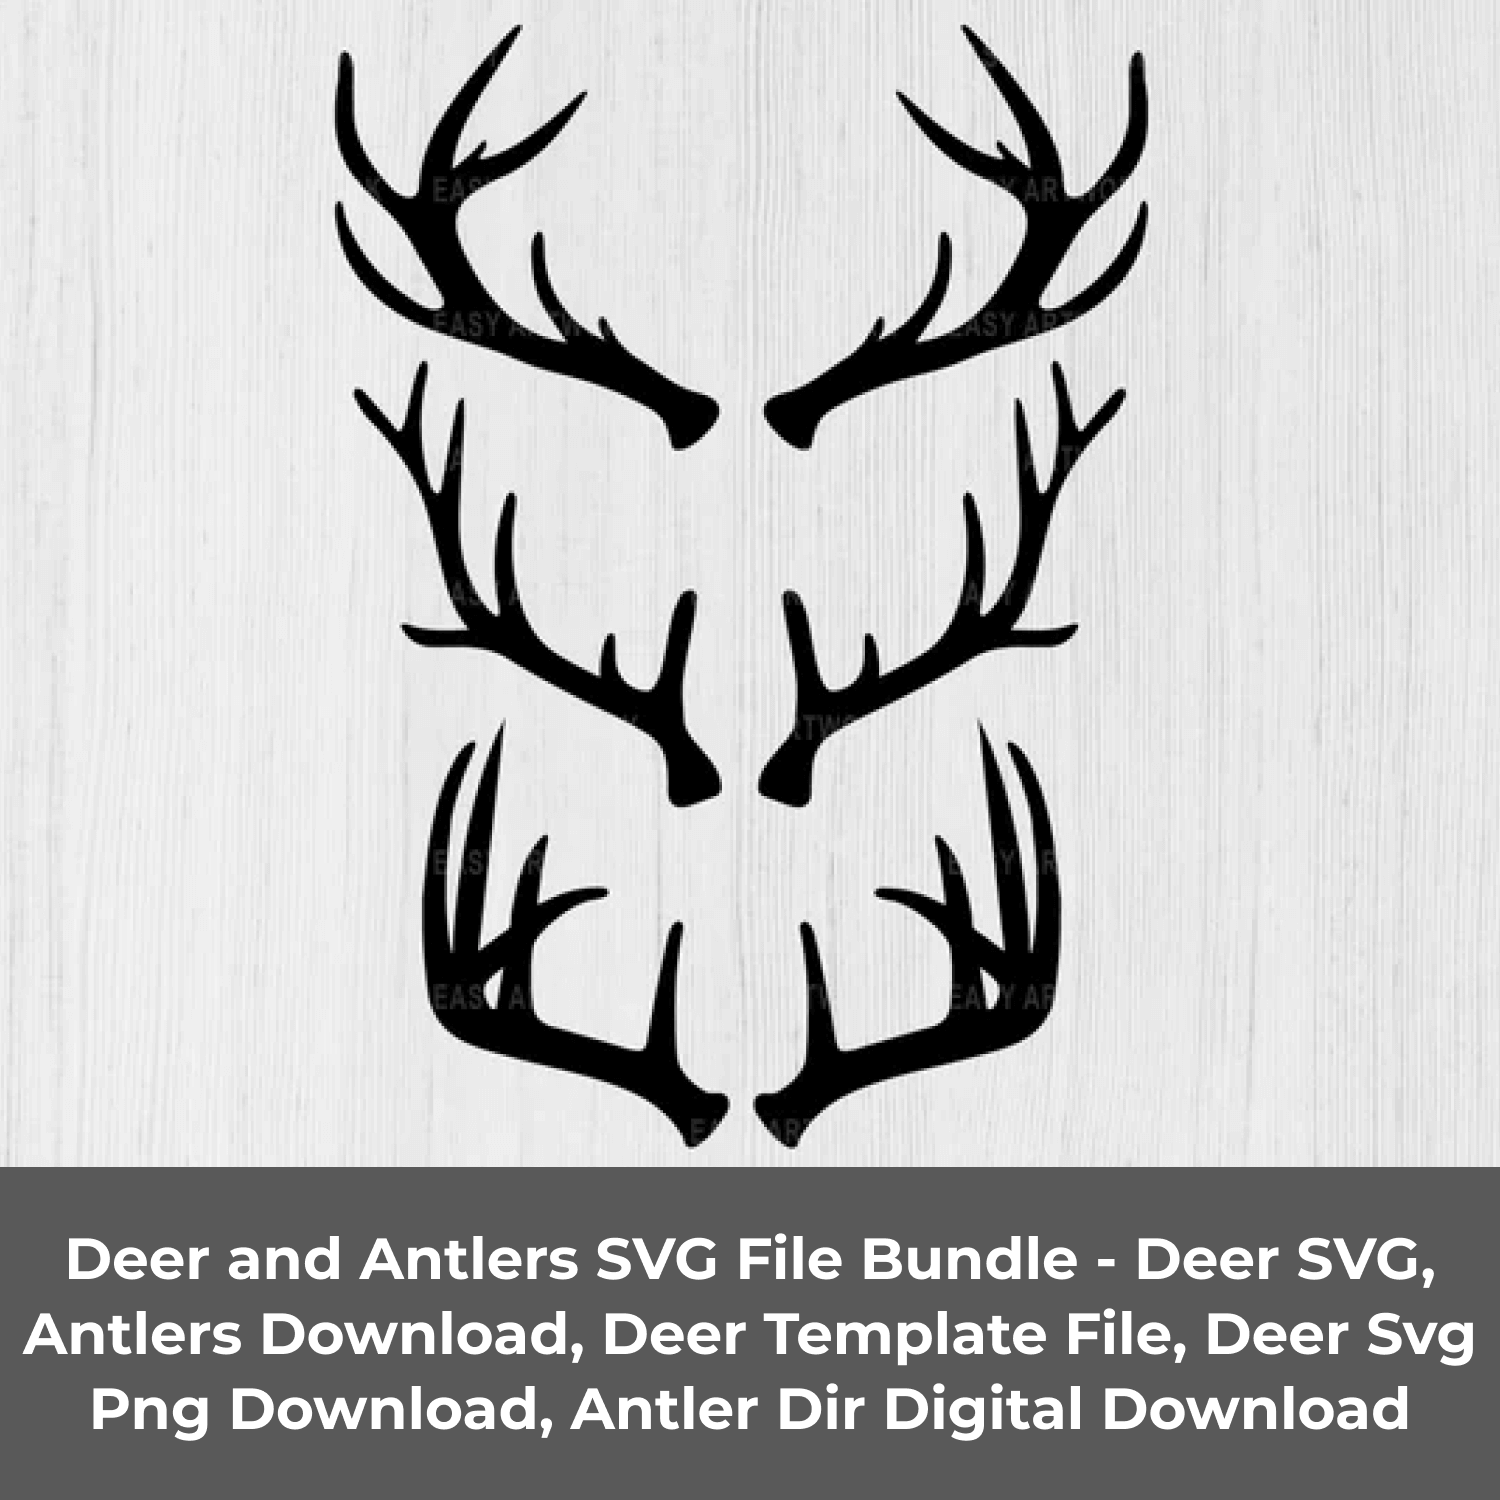 Deer antlers svg file bundle.